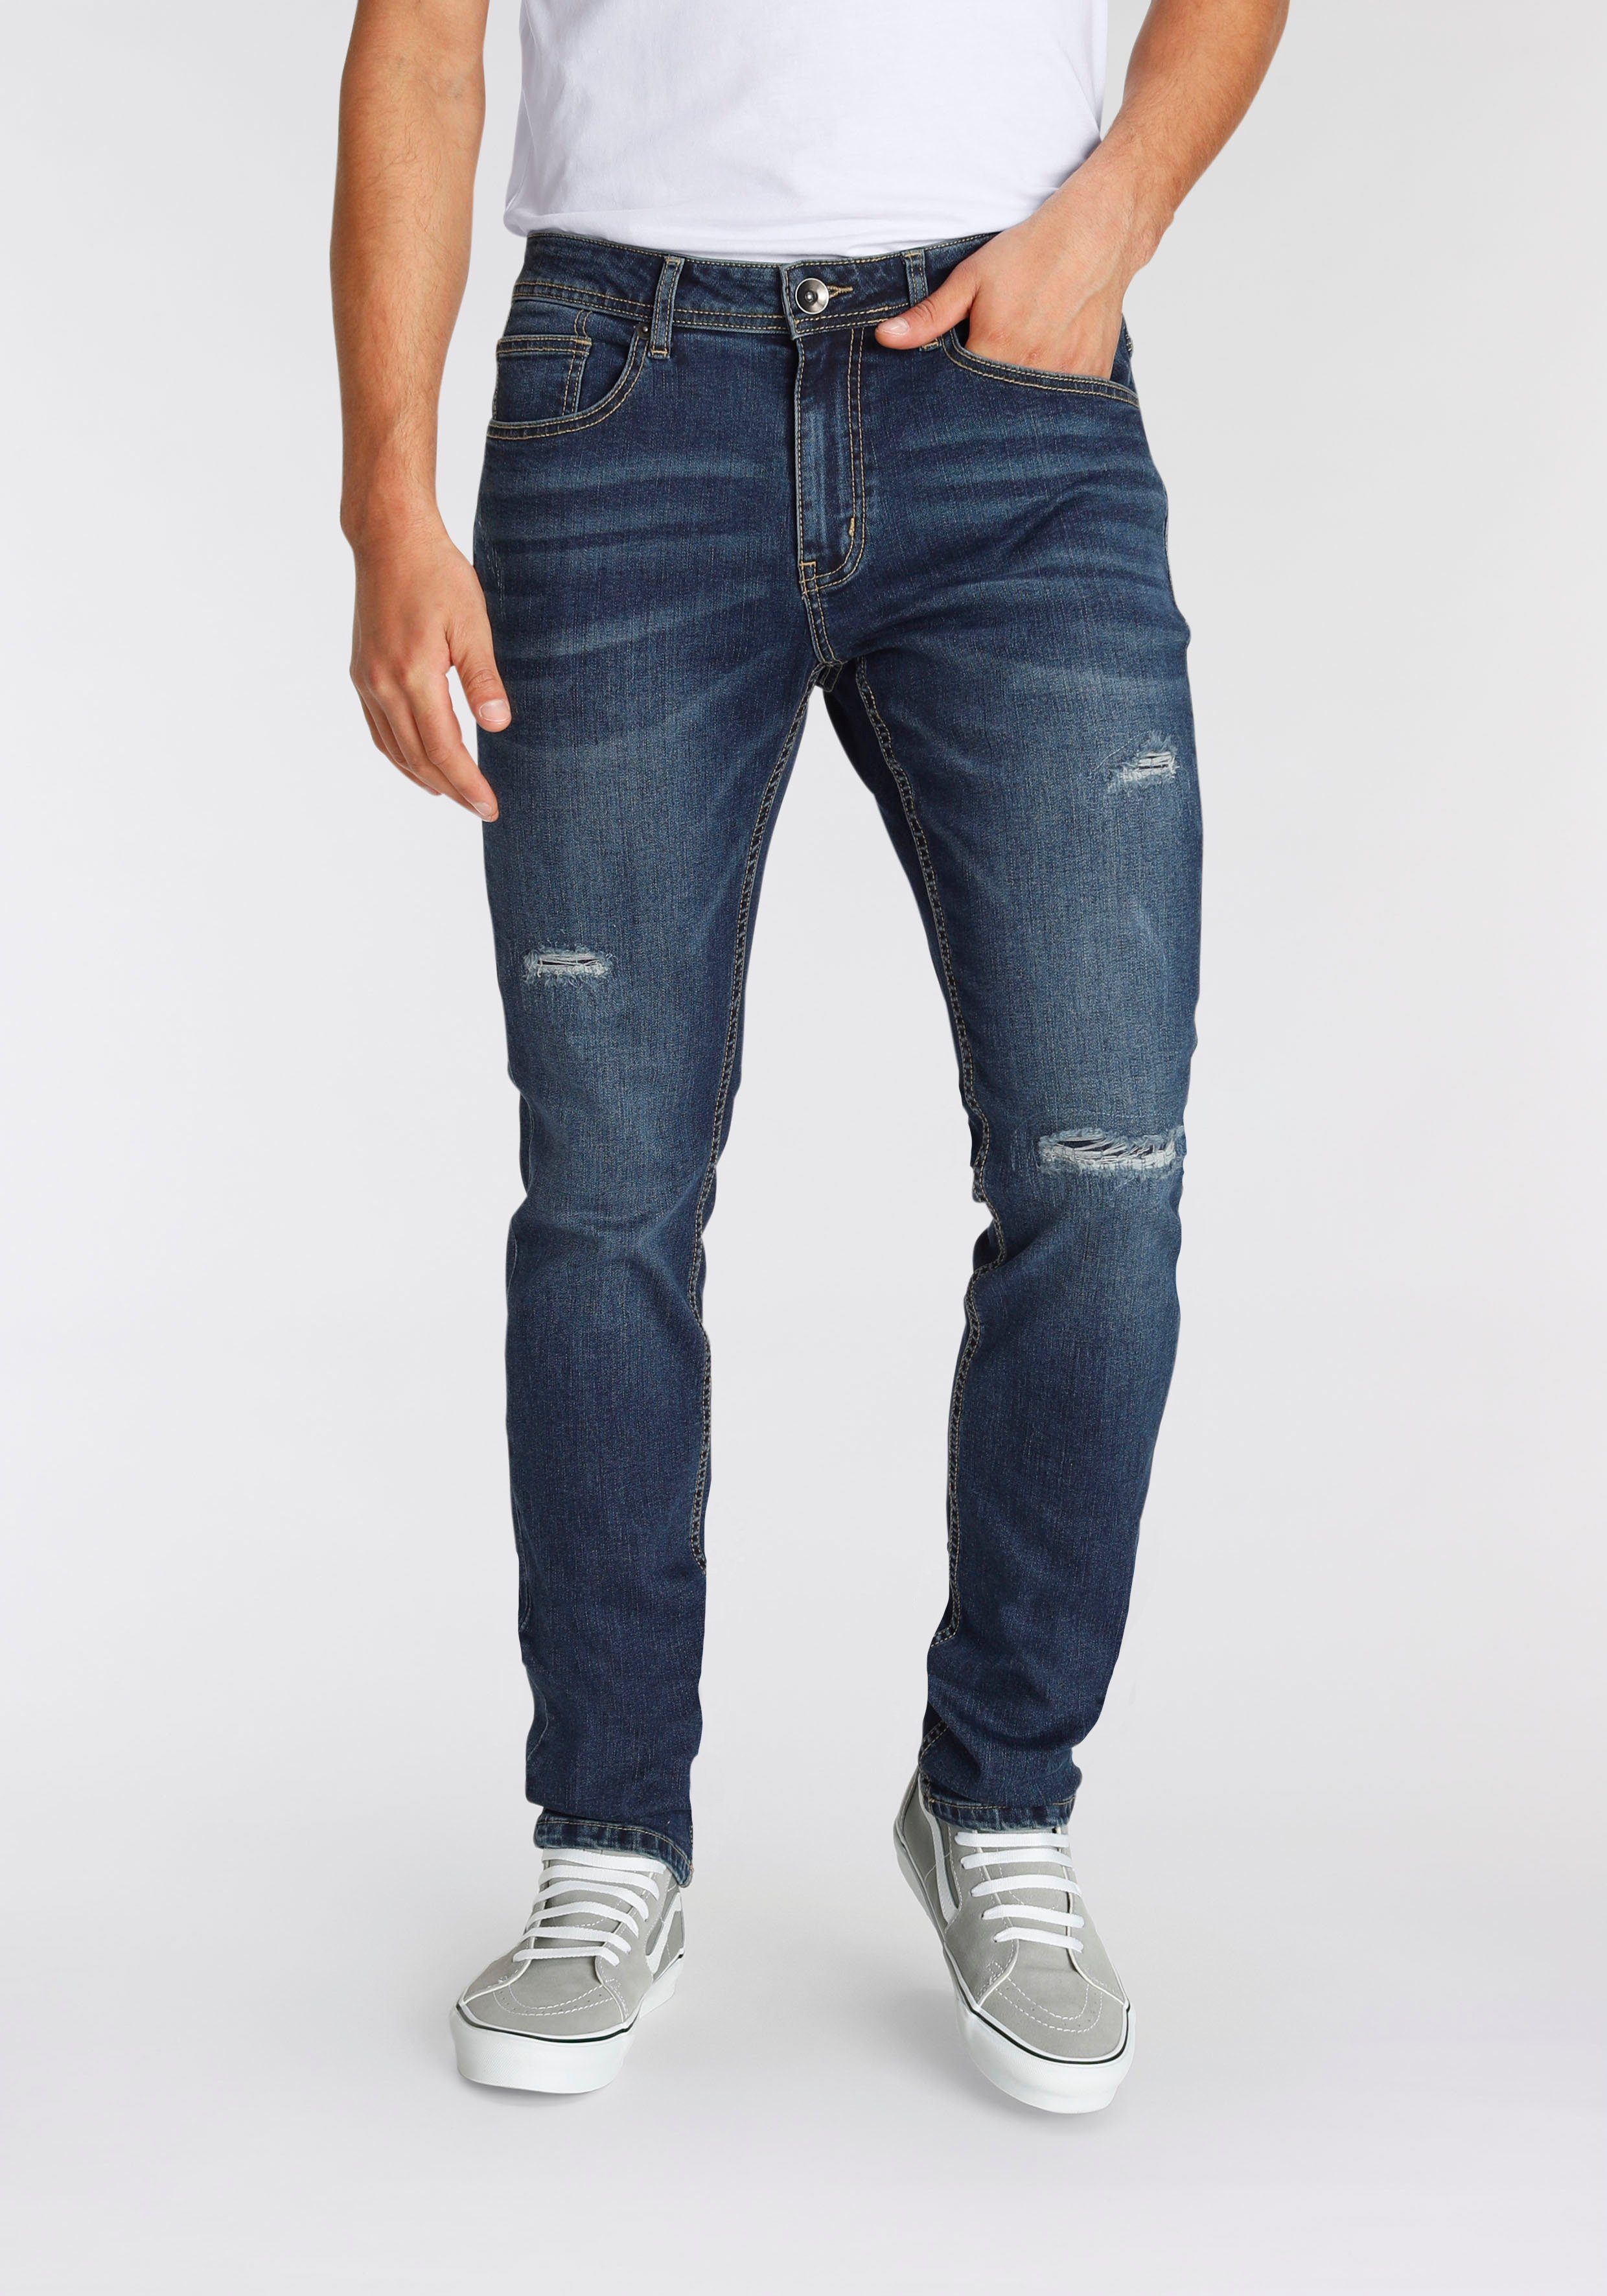 AJC Straight-Jeans Beinen an den Abriebeffekten blue mit dark